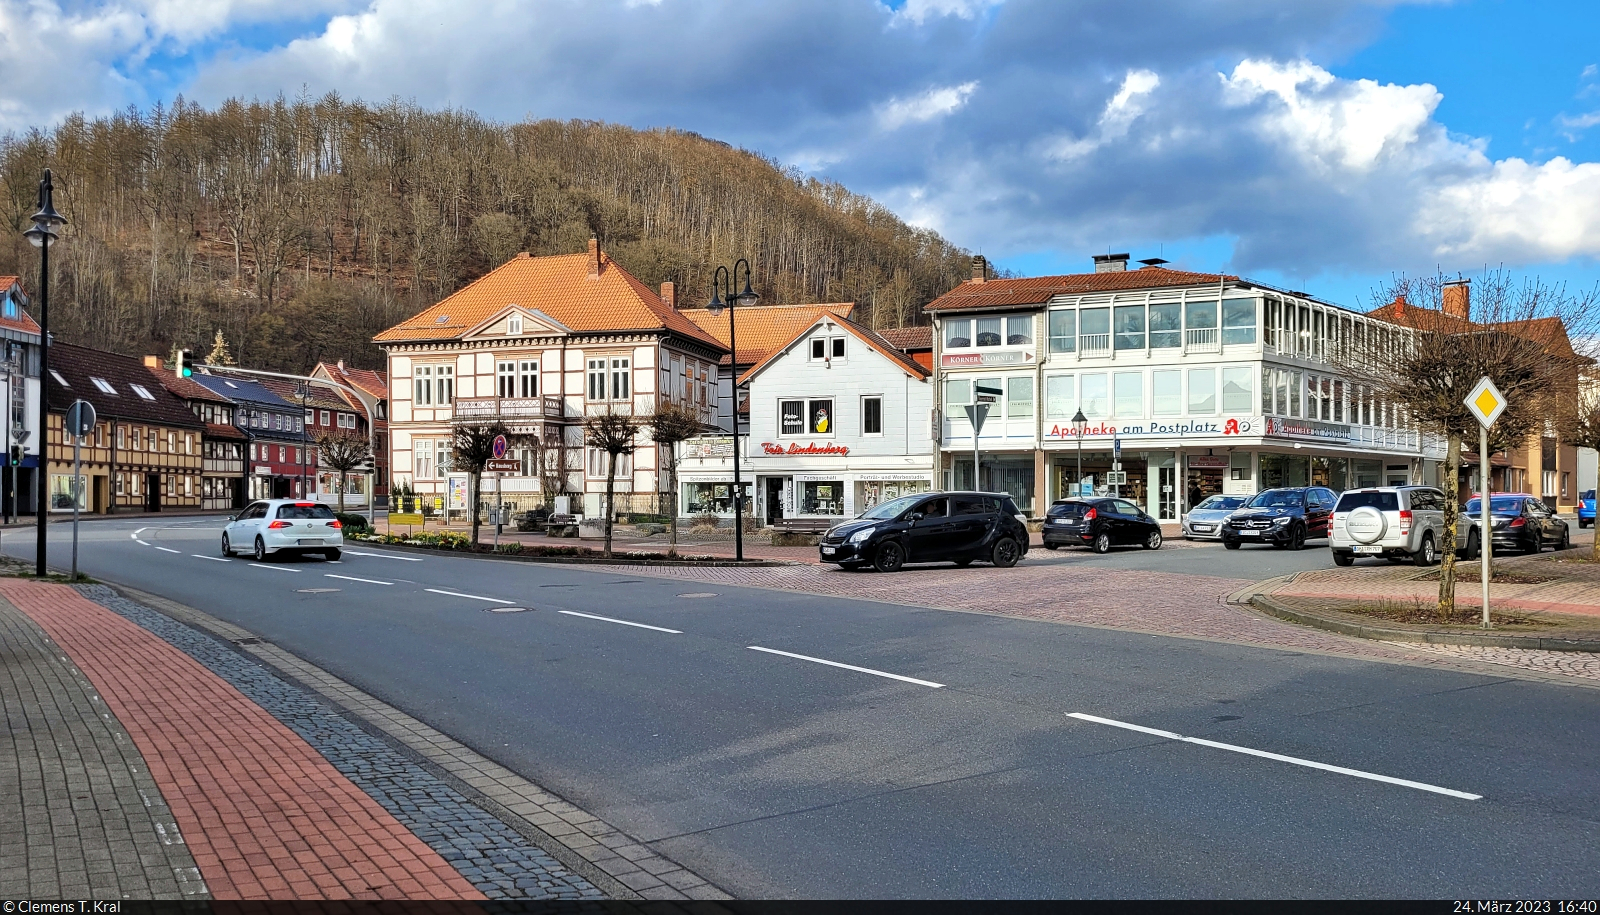 Der Postplatz in Bad Lauterberg, gelegen an der Bundesstrae 27 und am Beginn der hiesigen Einkaufsmeile.

🕓 24.3.2023 | 16:40 Uhr